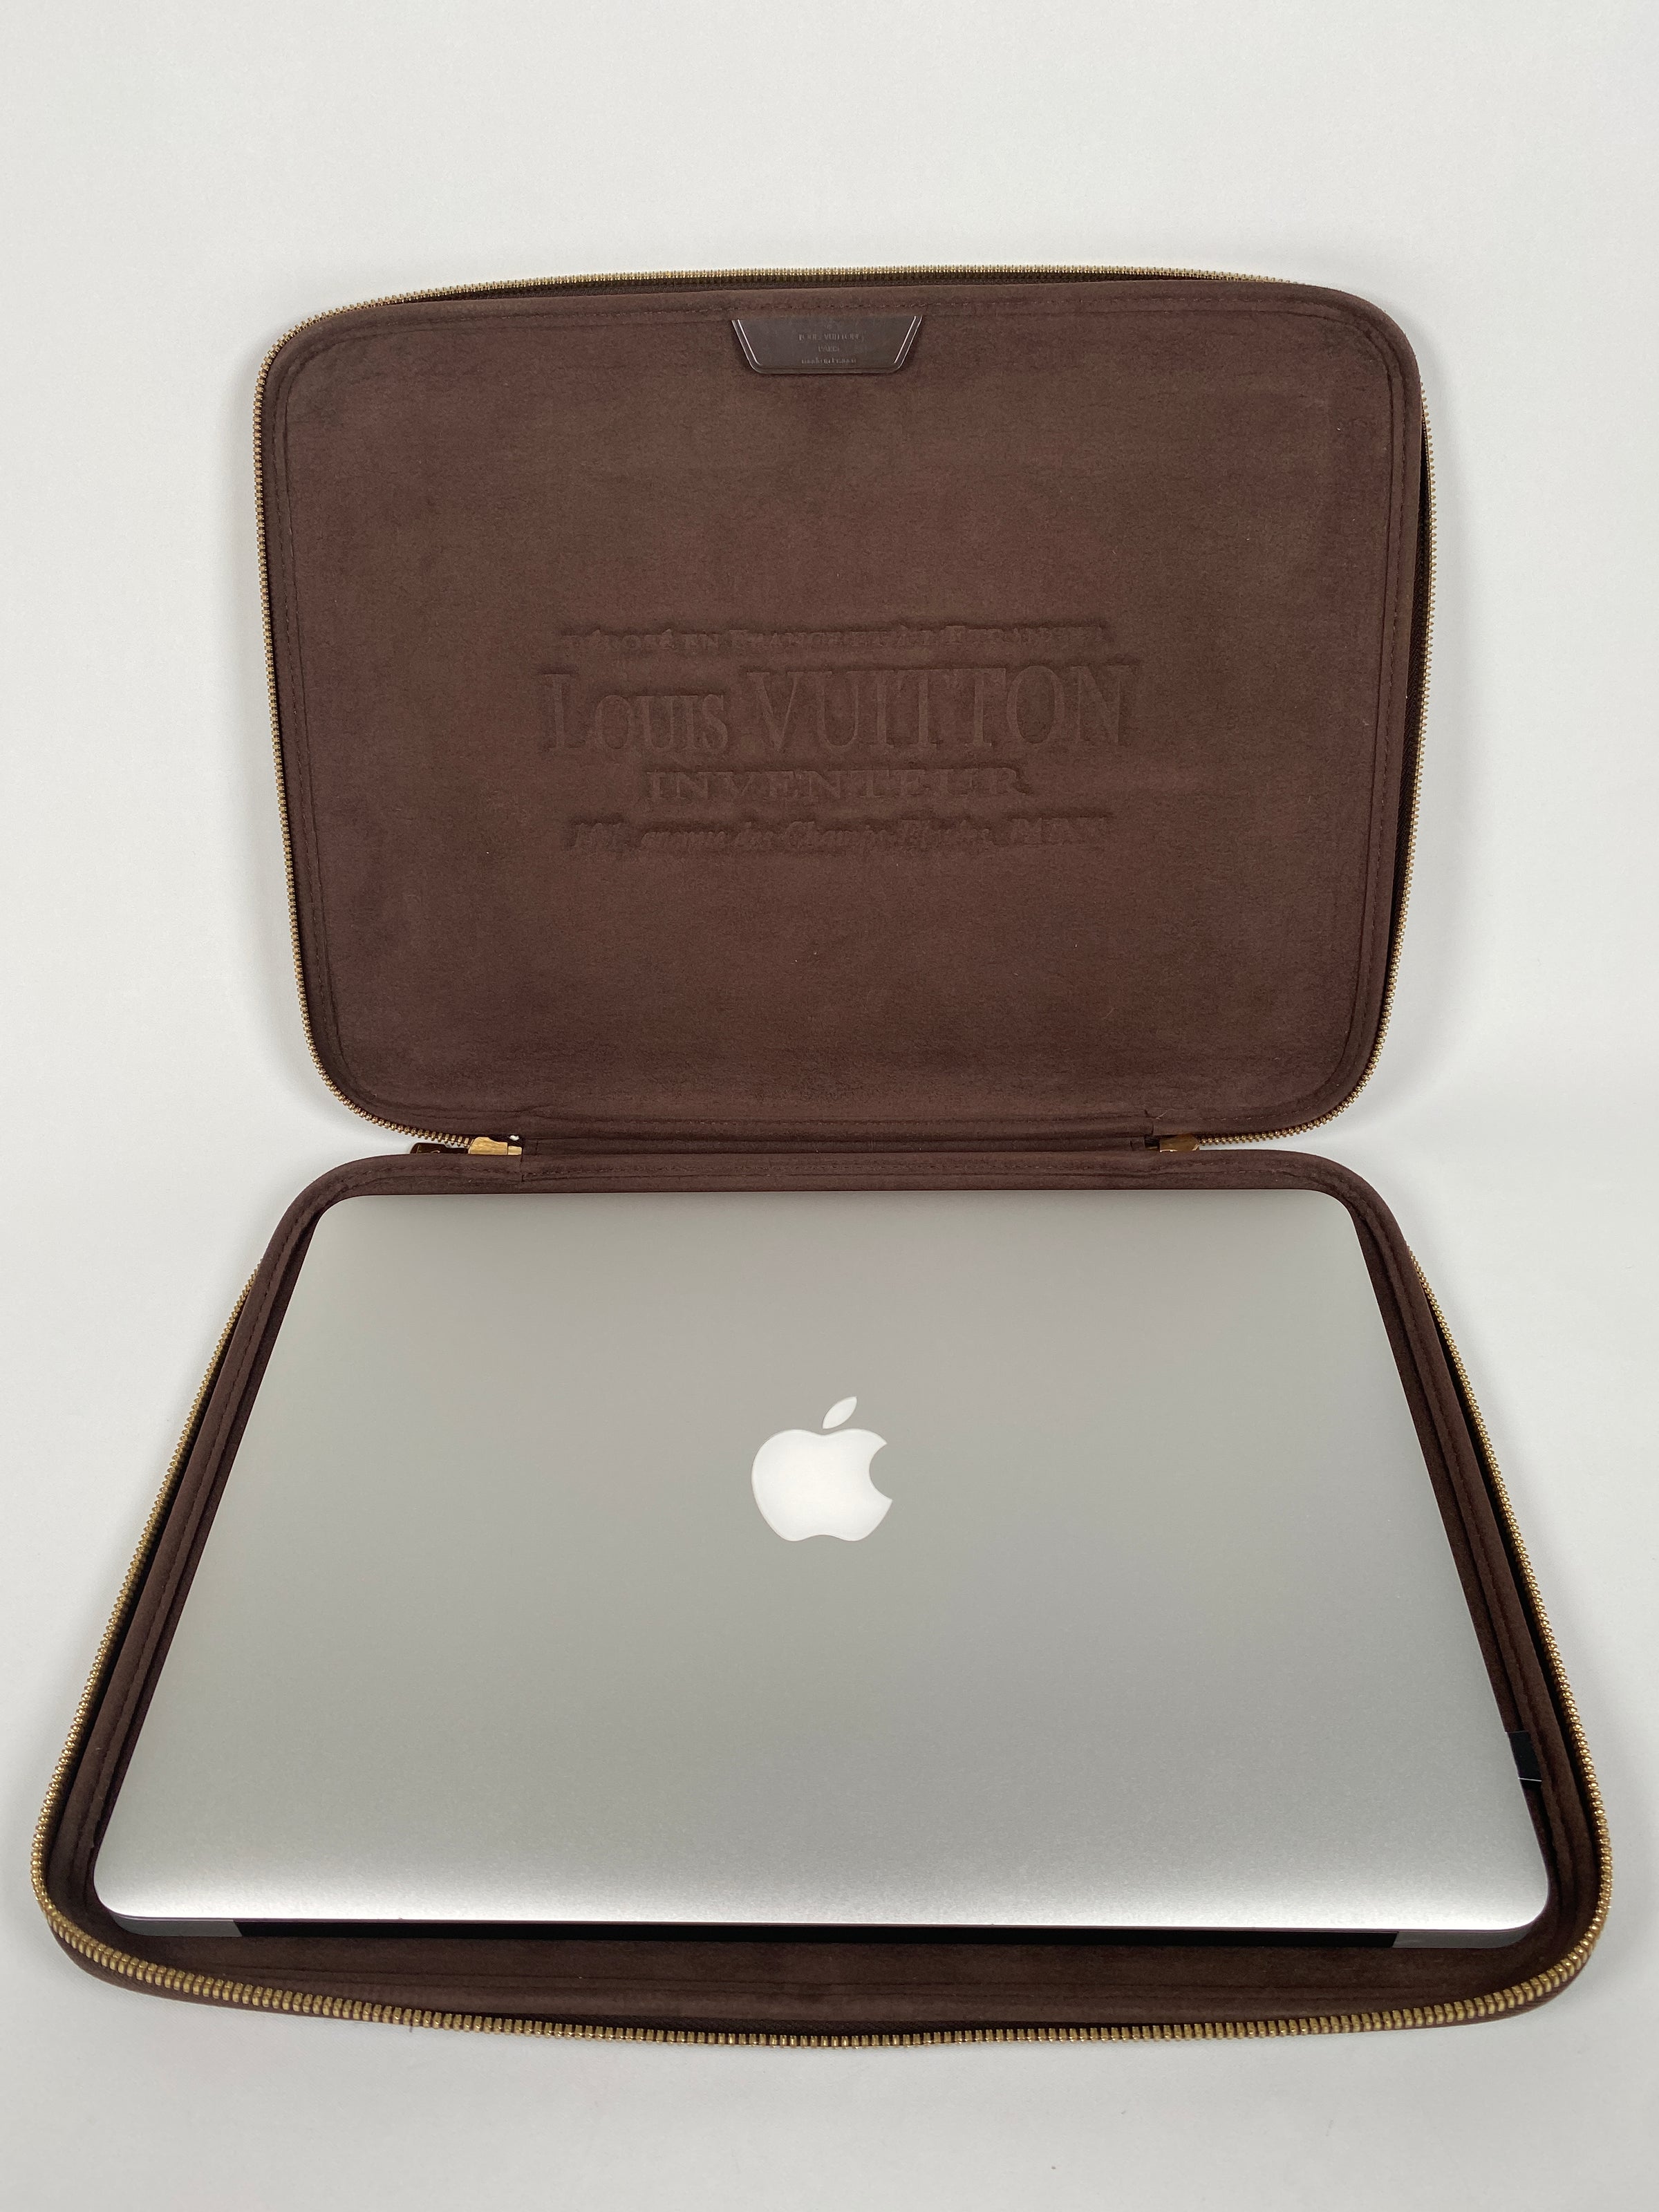 macbook pro 13 inch case louis vuitton